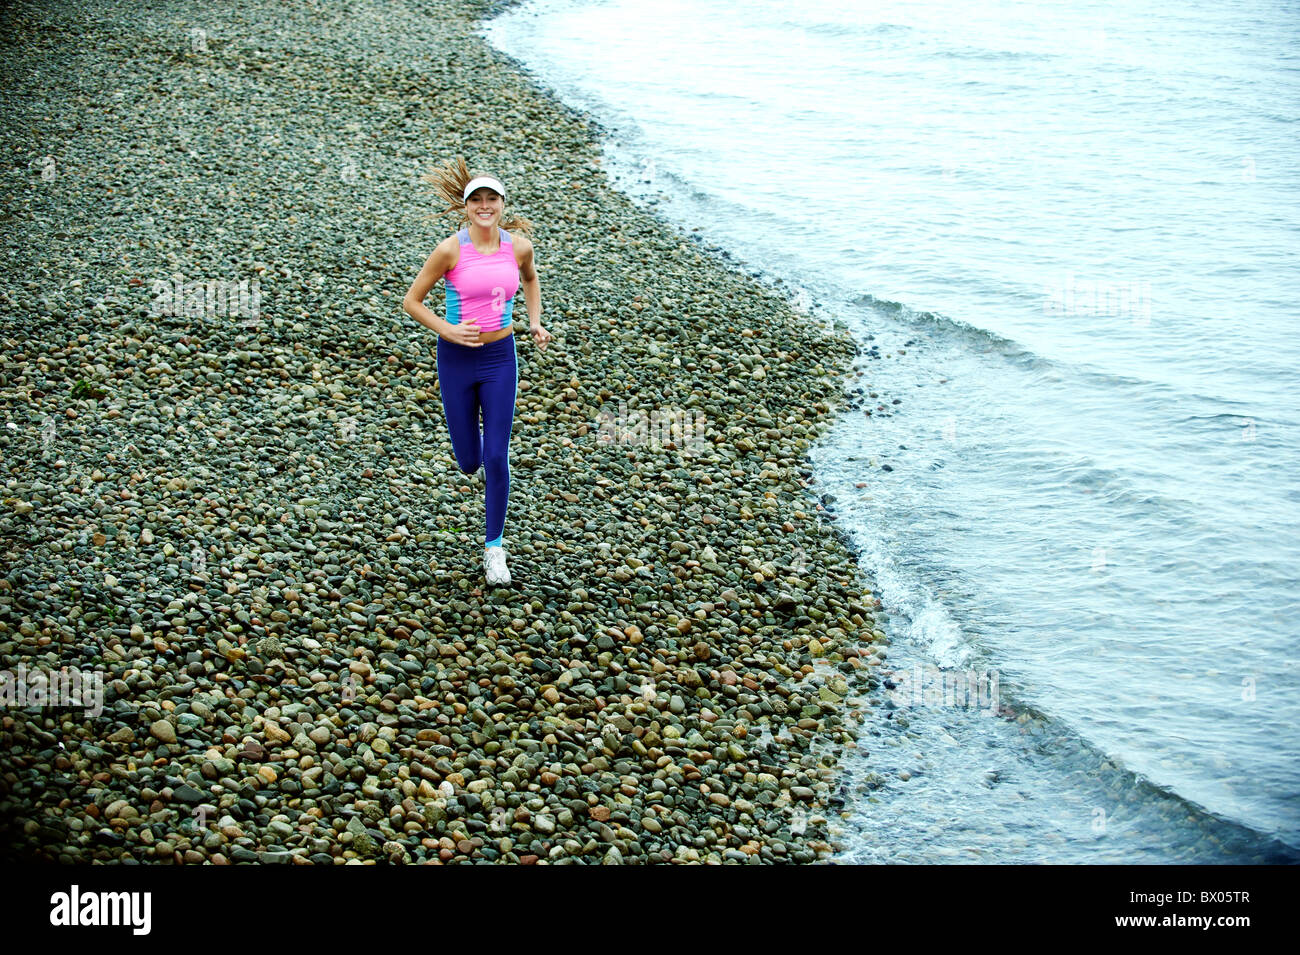 Caucasian woman running on pebble beach Stock Photo